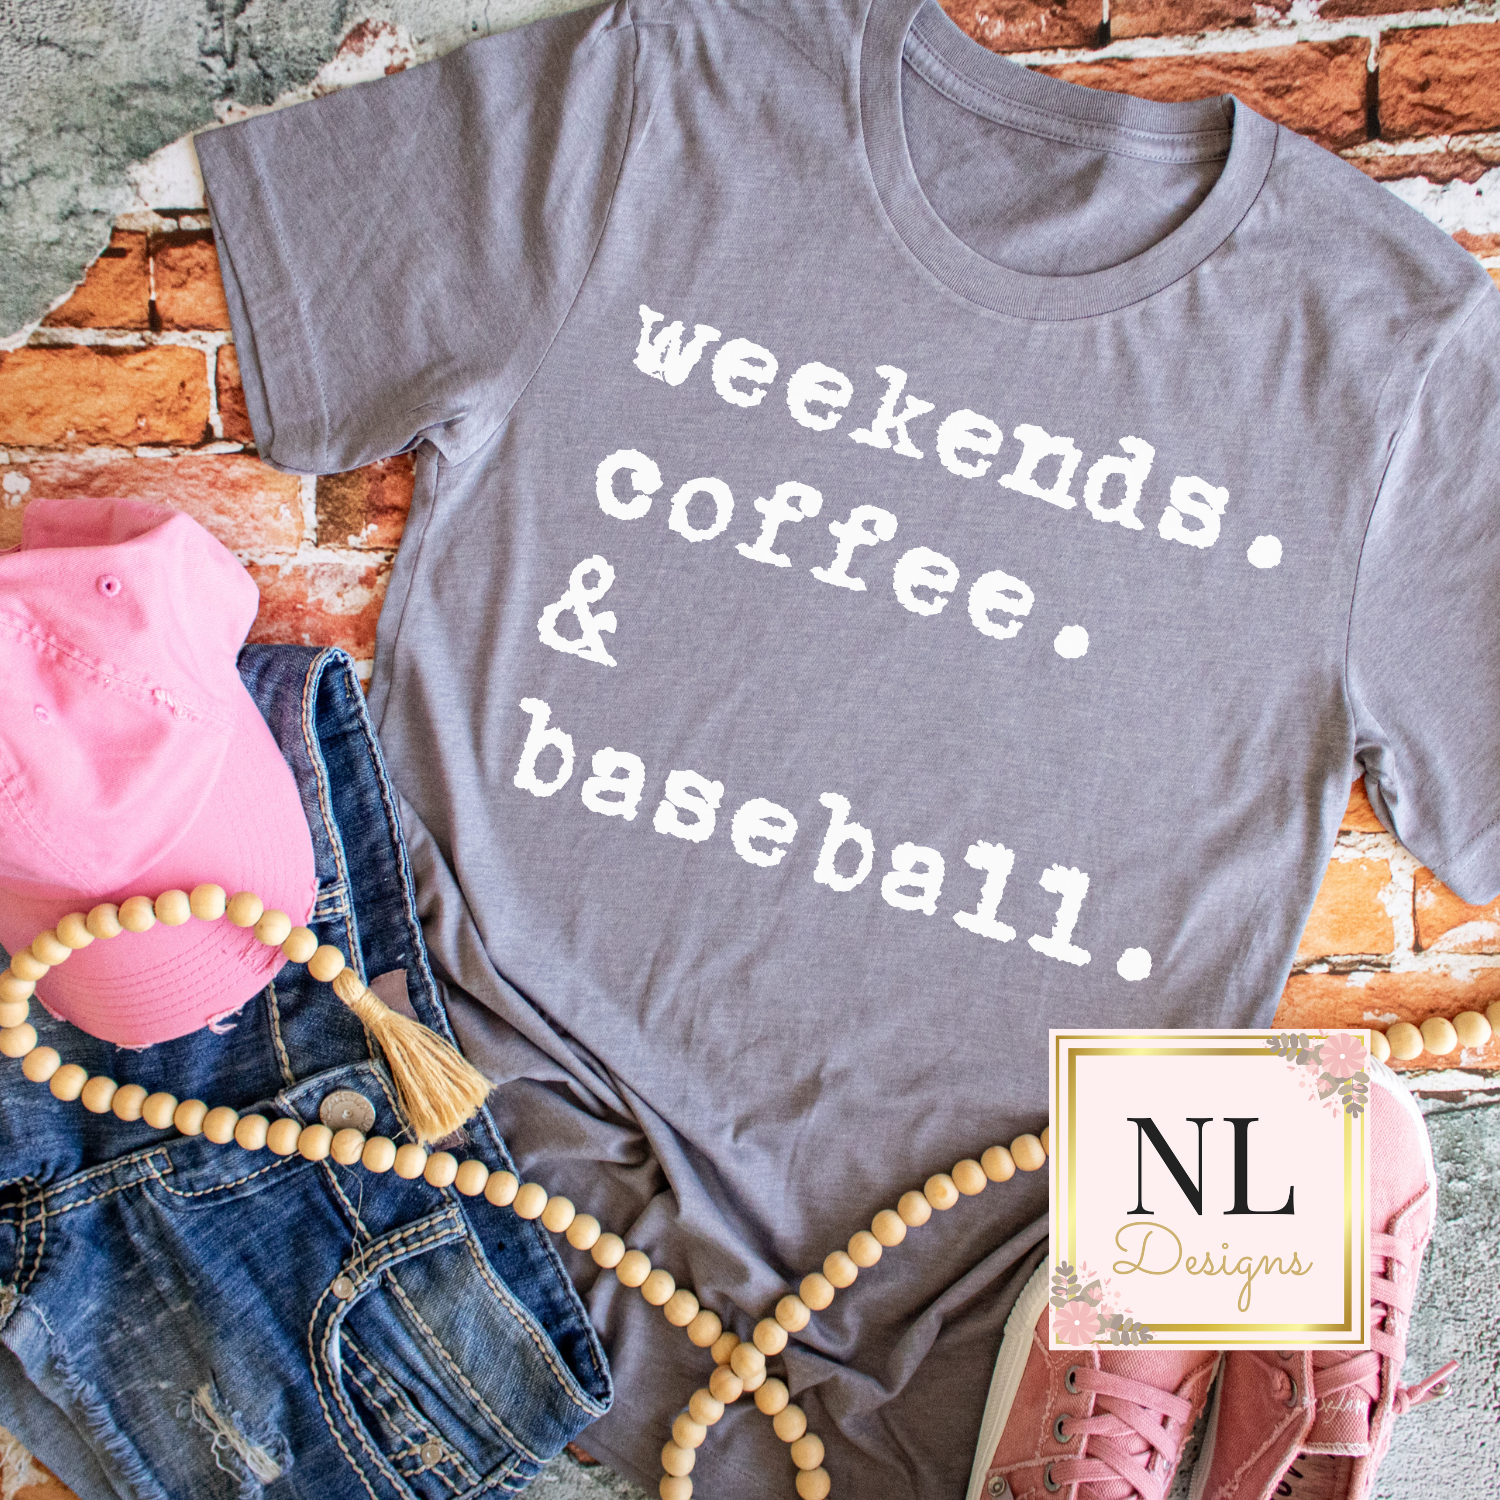 Weekends. Coffee. Baseball.